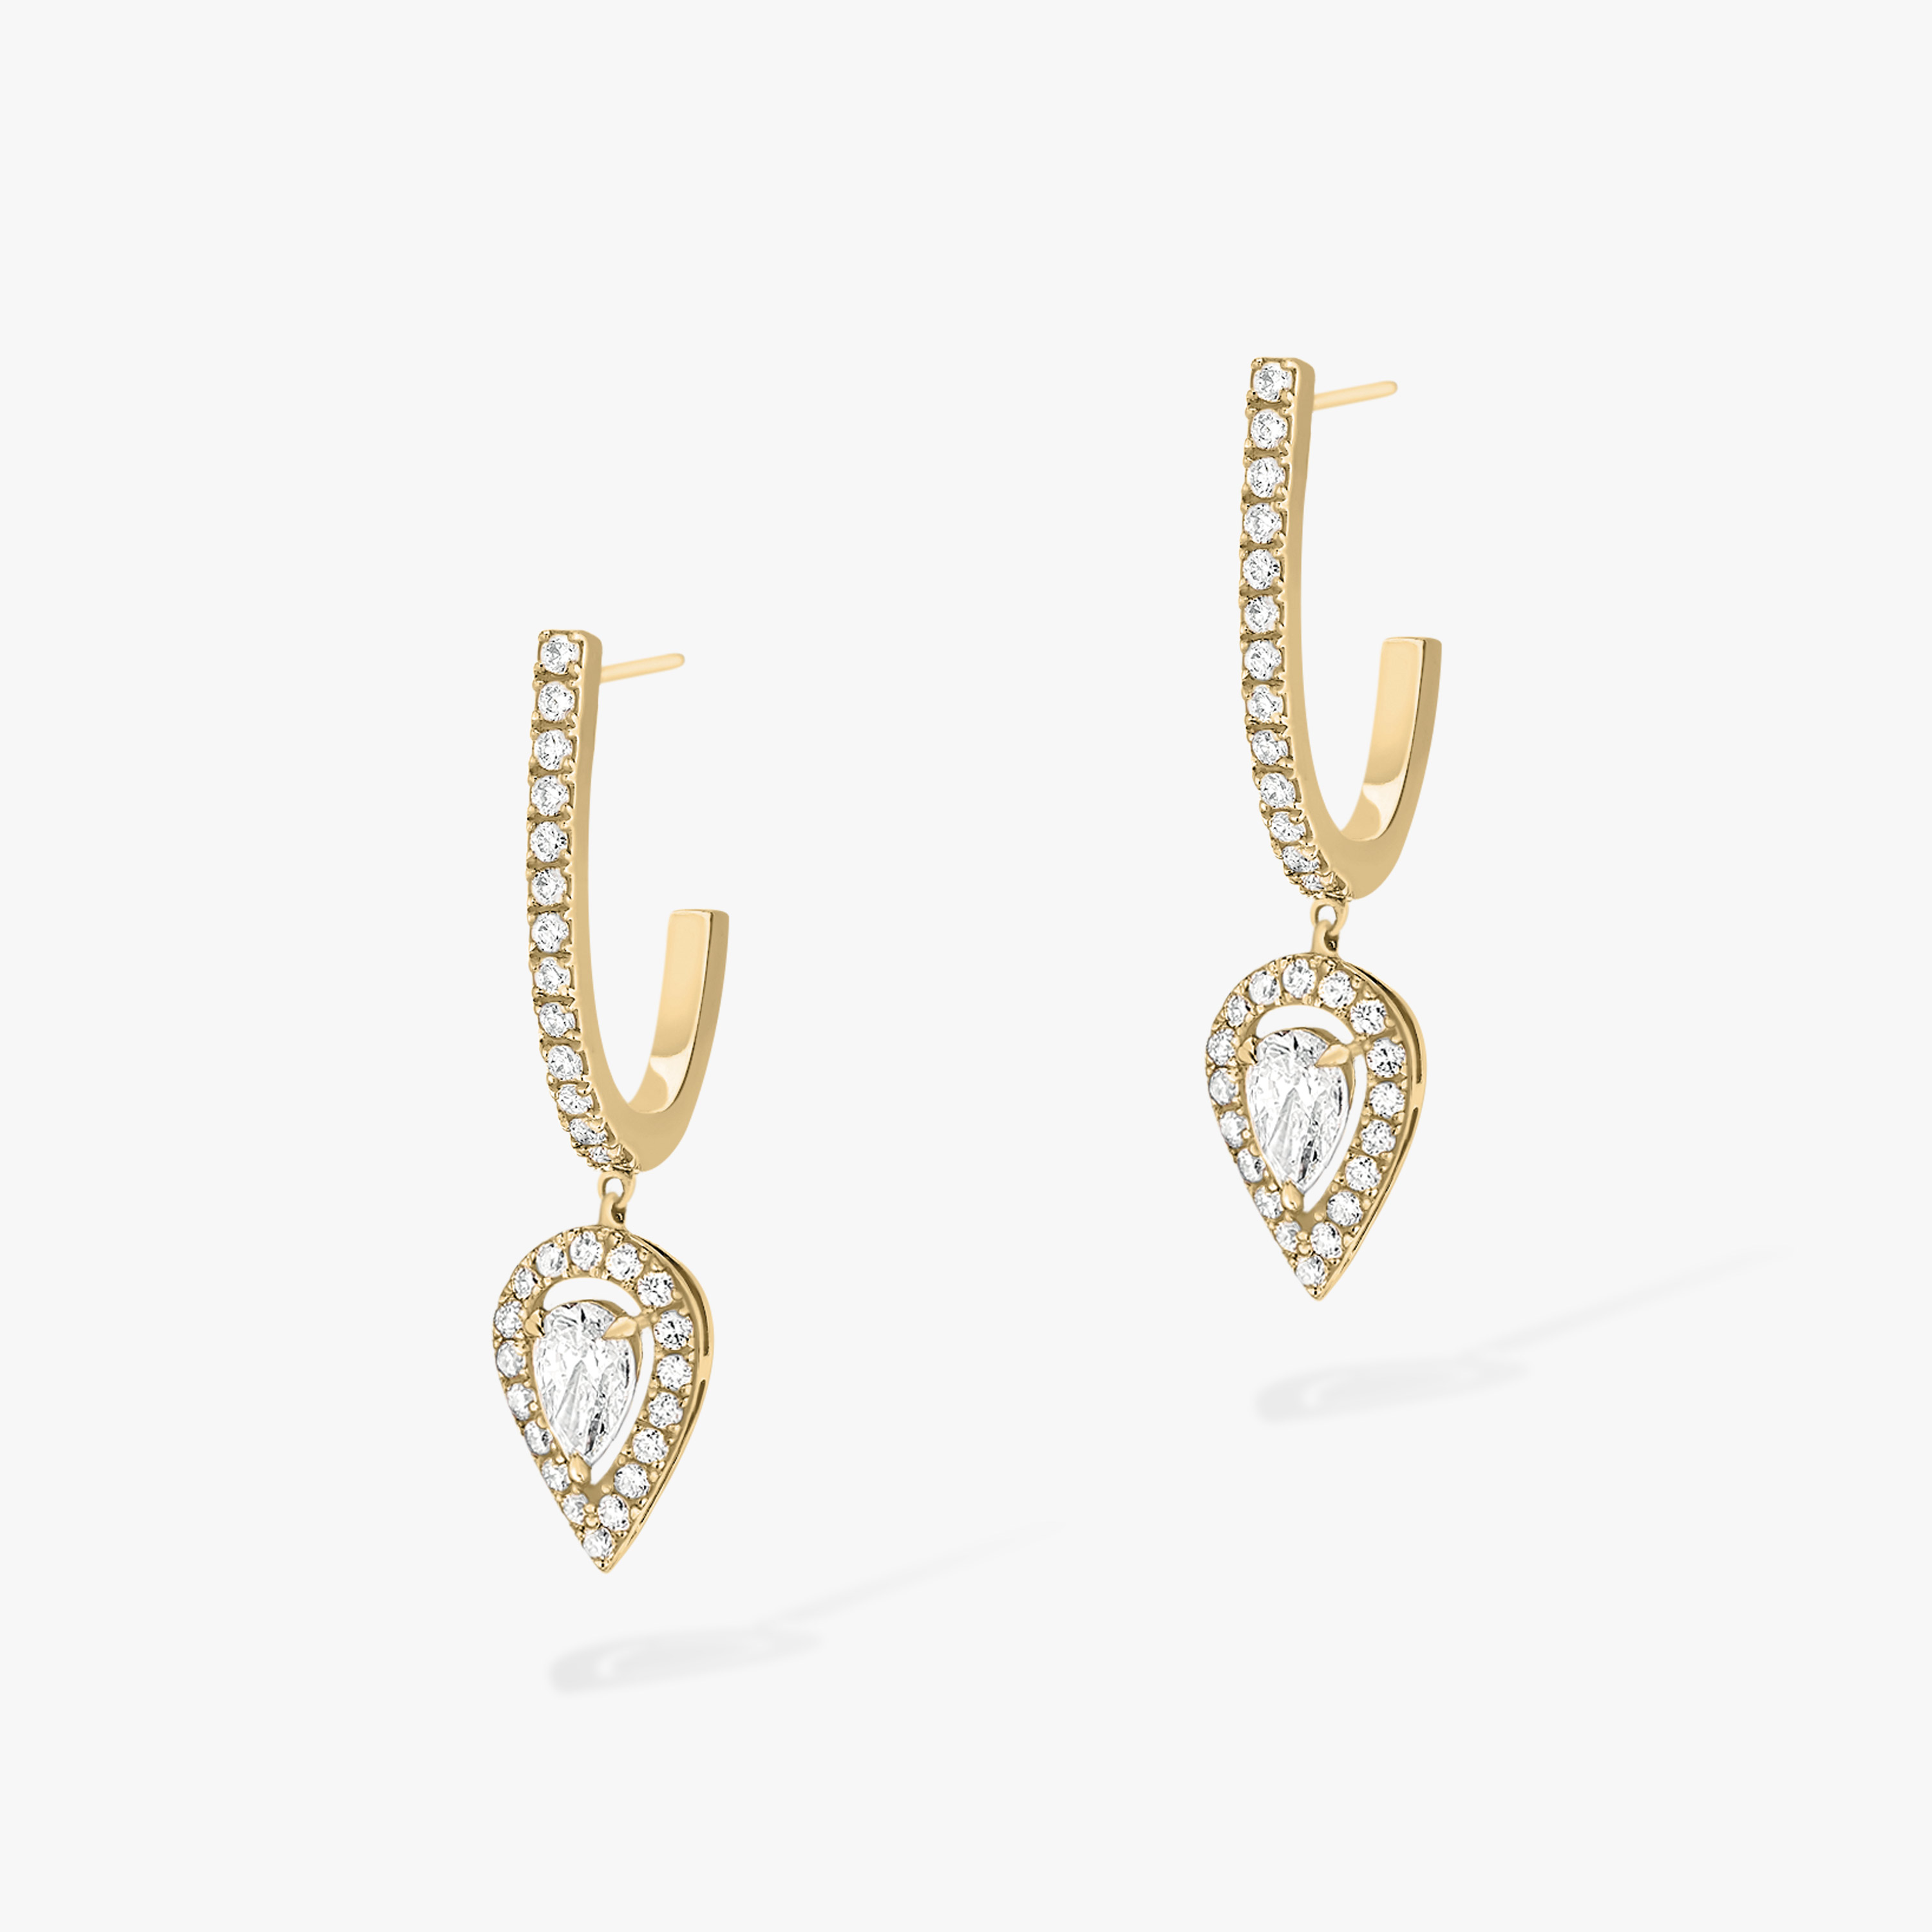 Boucles d'oreilles Femme Or Jaune Diamant Créoles Joy Diamant Poire 2x0,10ct 07480-YG